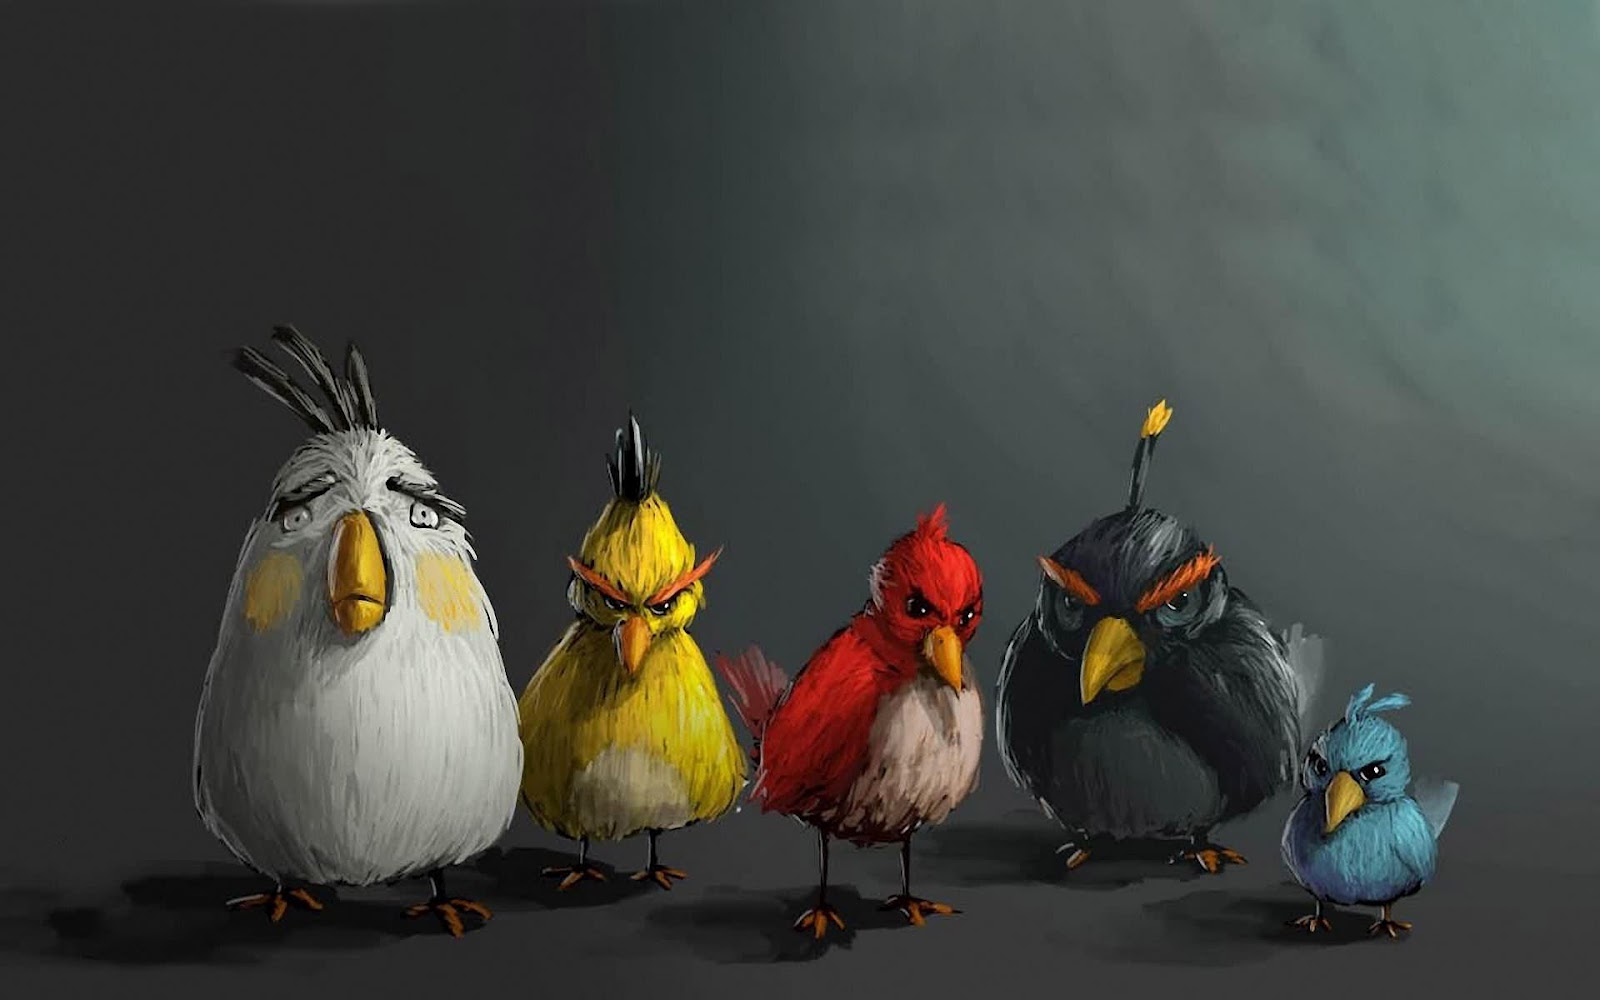 http://1.bp.blogspot.com/-pEawEnEIZt0/UEMgU2NxTLI/AAAAAAAAFsw/CFfH-jNP1SU/s1600/hd-game-angry-birds-wallpaper-hd-game-angry-birds-achtergrond.jpg